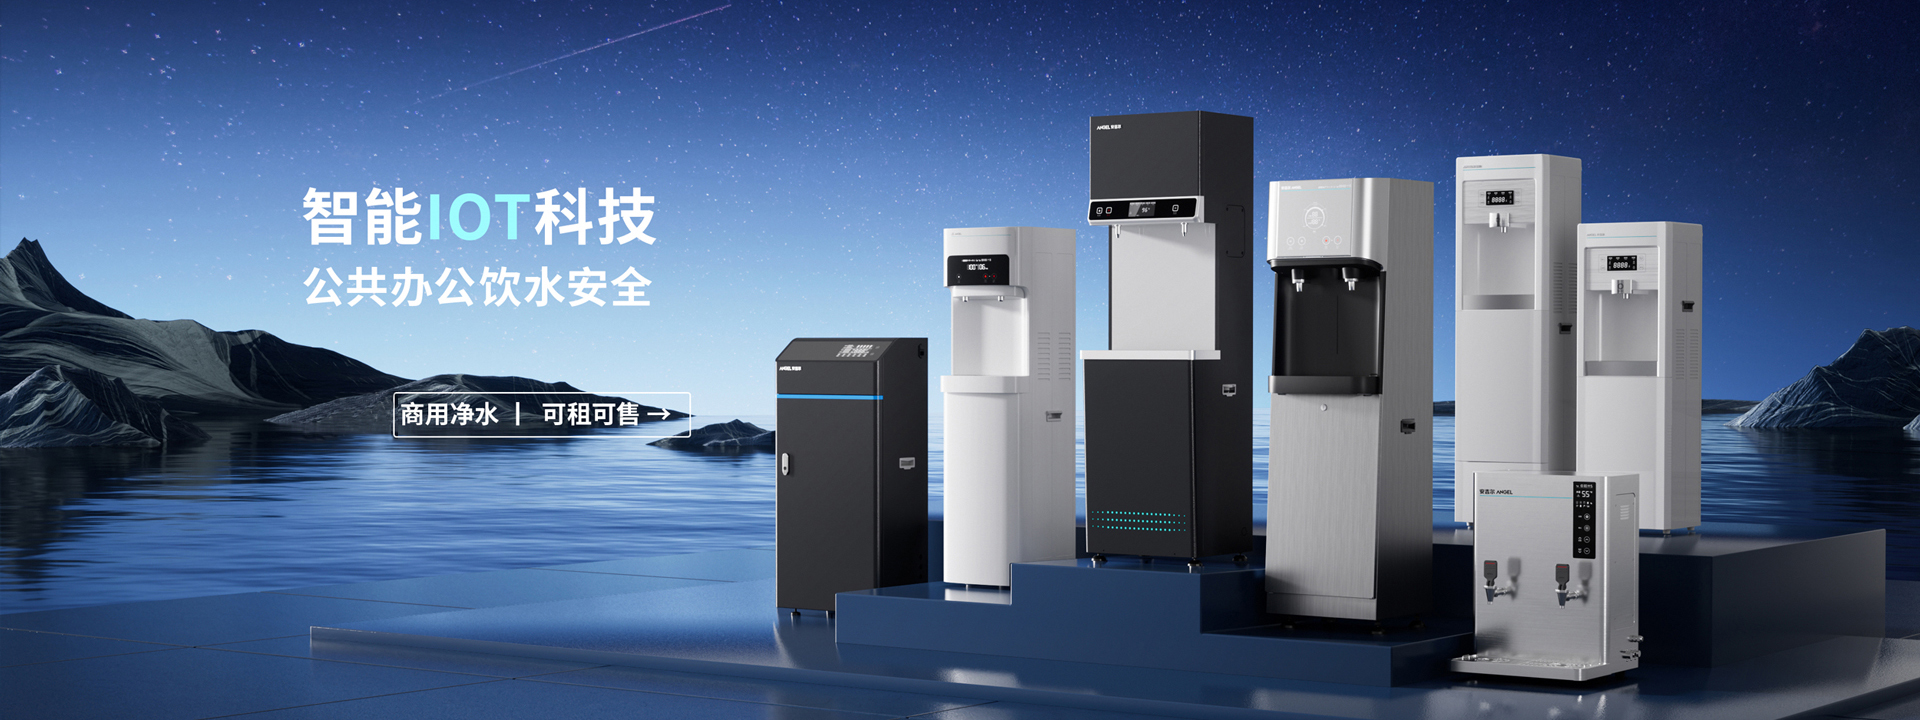 重庆直饮水机,学校直饮水机,净水机厂家,重庆海之源科技有限公司